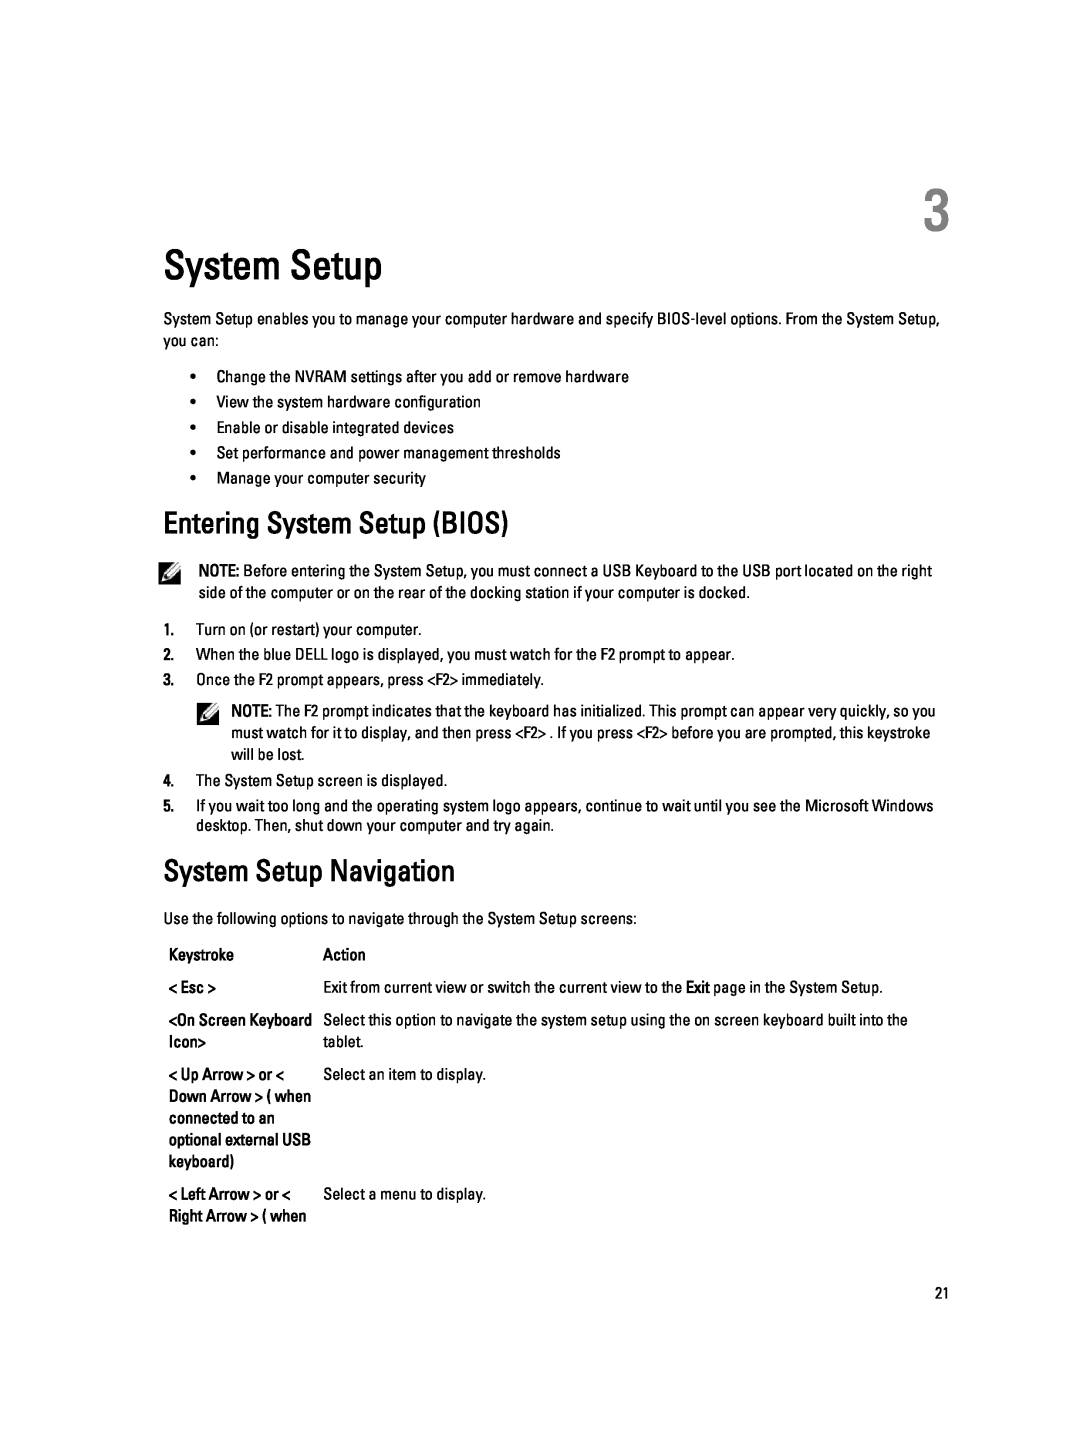 Dell 10-ST2E manual Entering System Setup BIOS, System Setup Navigation 